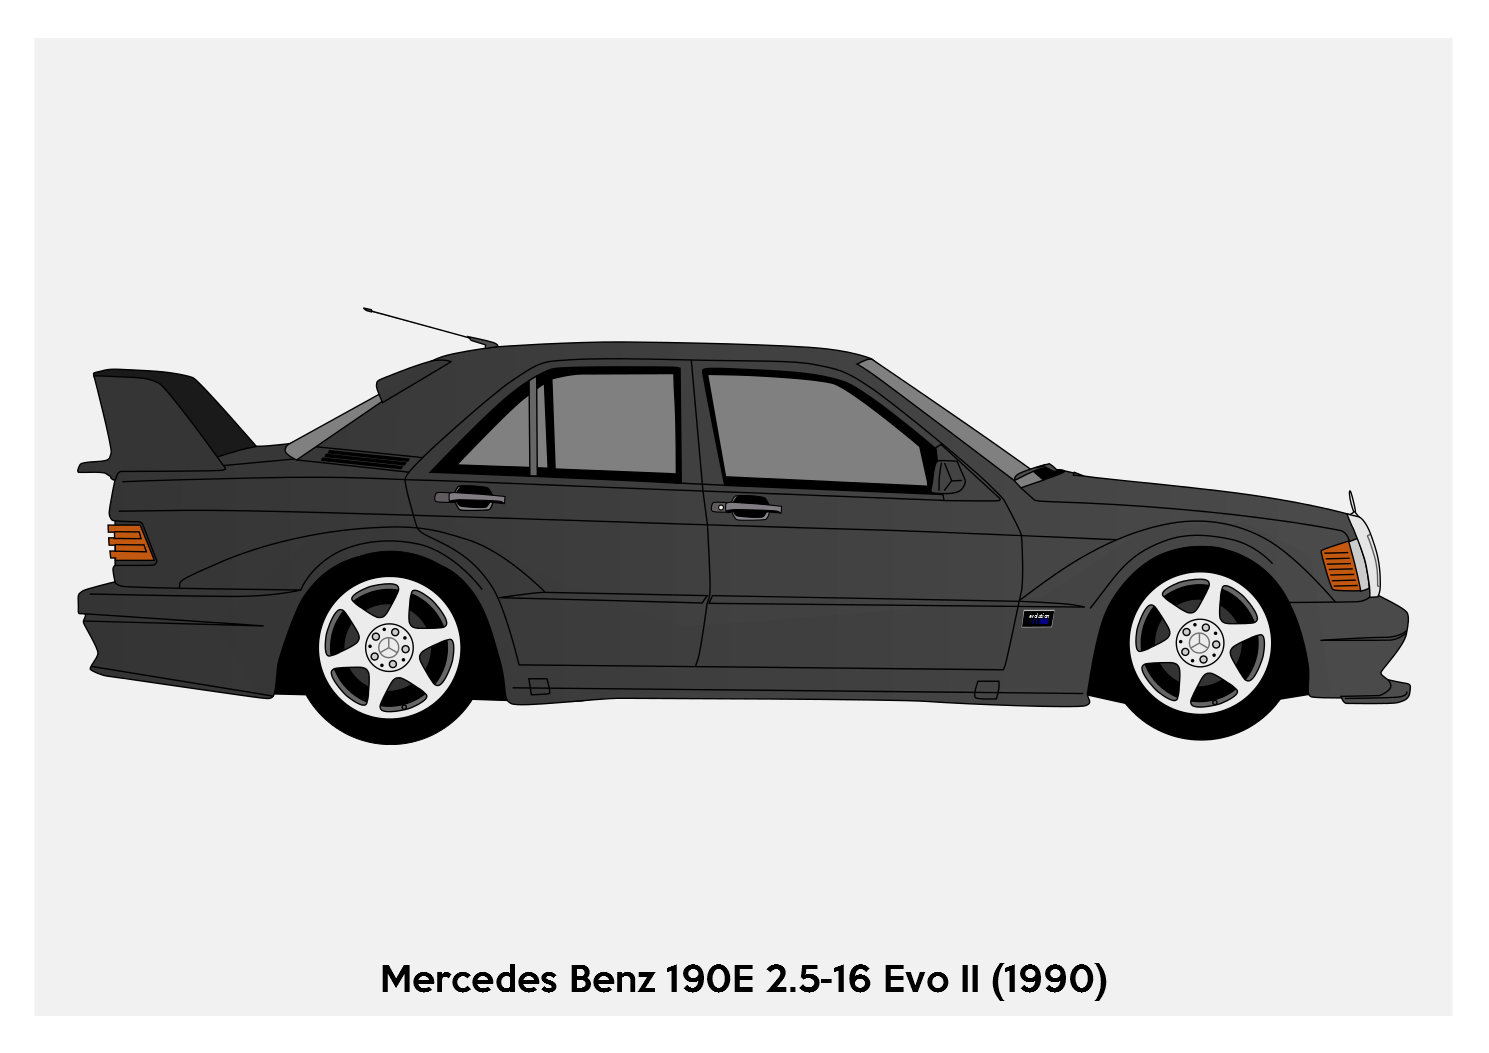 Plasticiteit verkeer Woud POSTER Mercedes 190E Cosworth Evo II Vector Art | Etsy